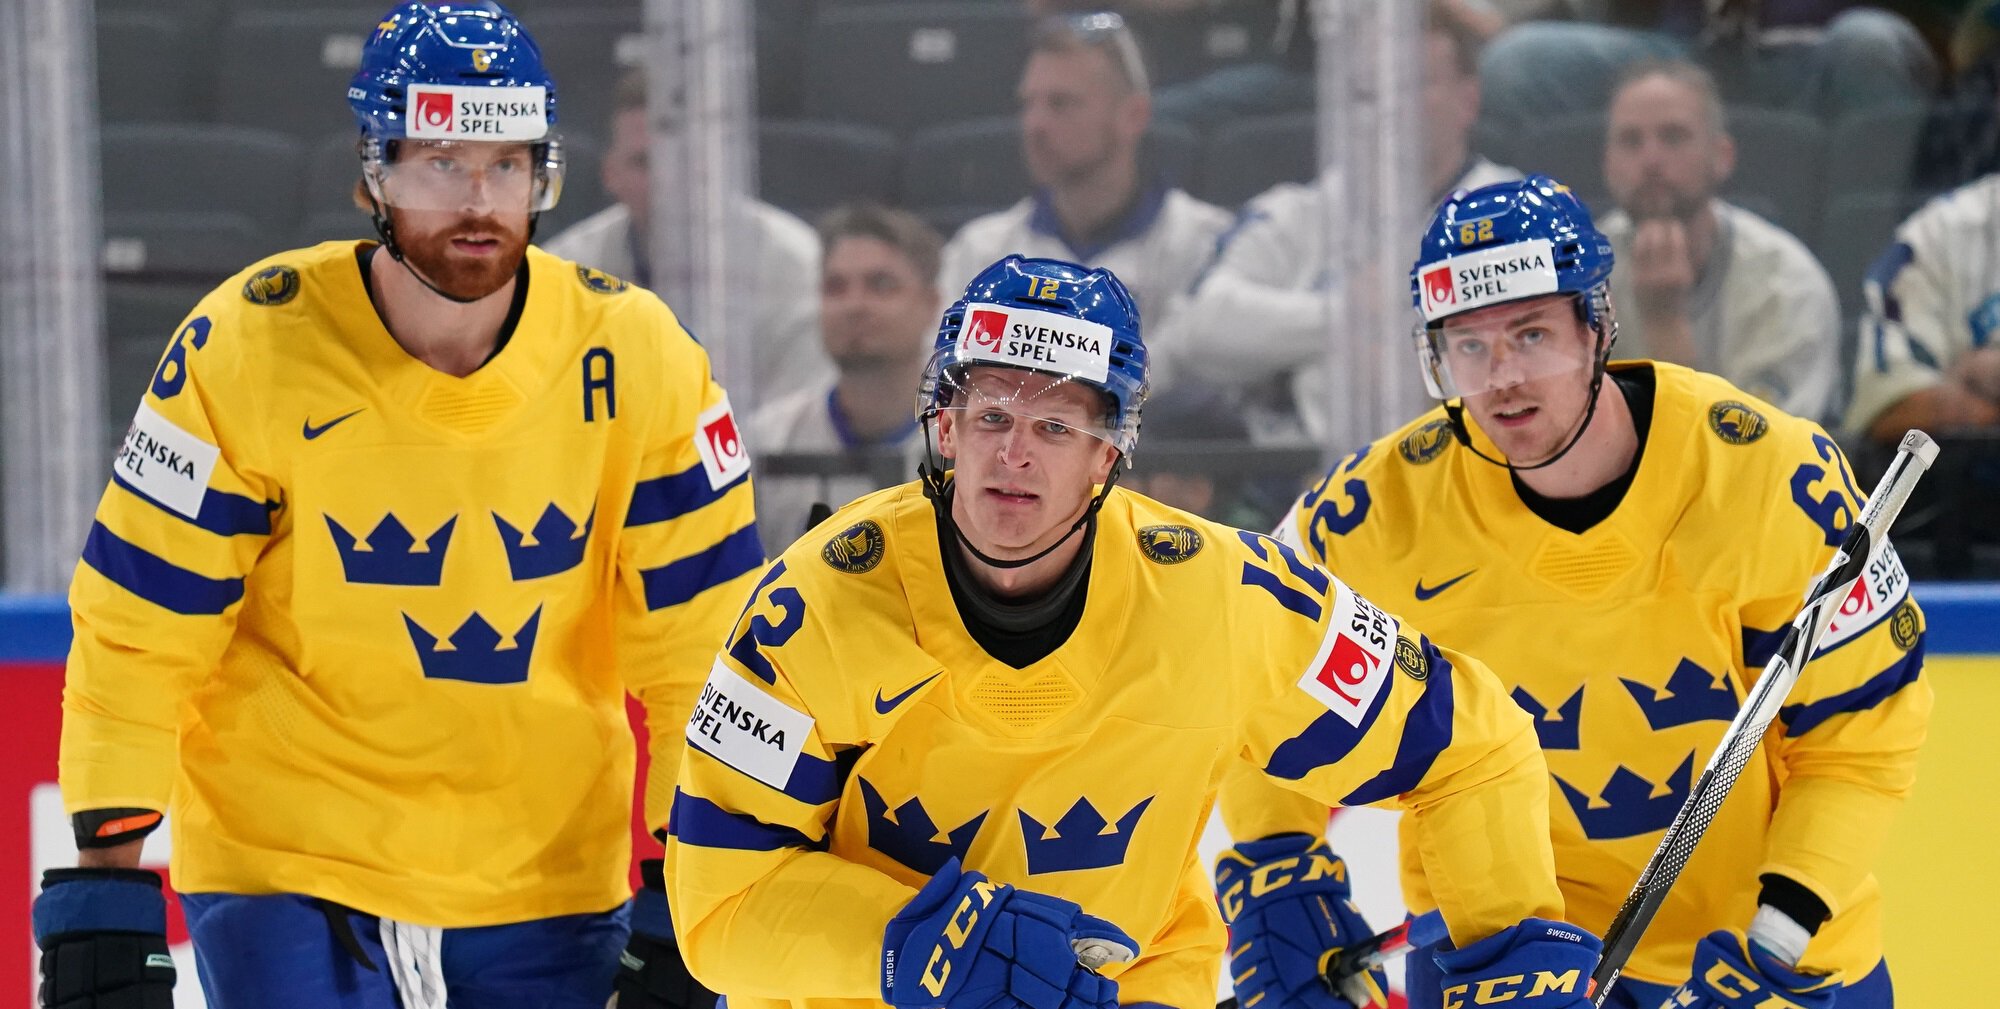 Юханссон, Эрикссон Эк, Юхан Ларссон и Брудин не сыграют за Швецию на ЧМ по хоккею 2022